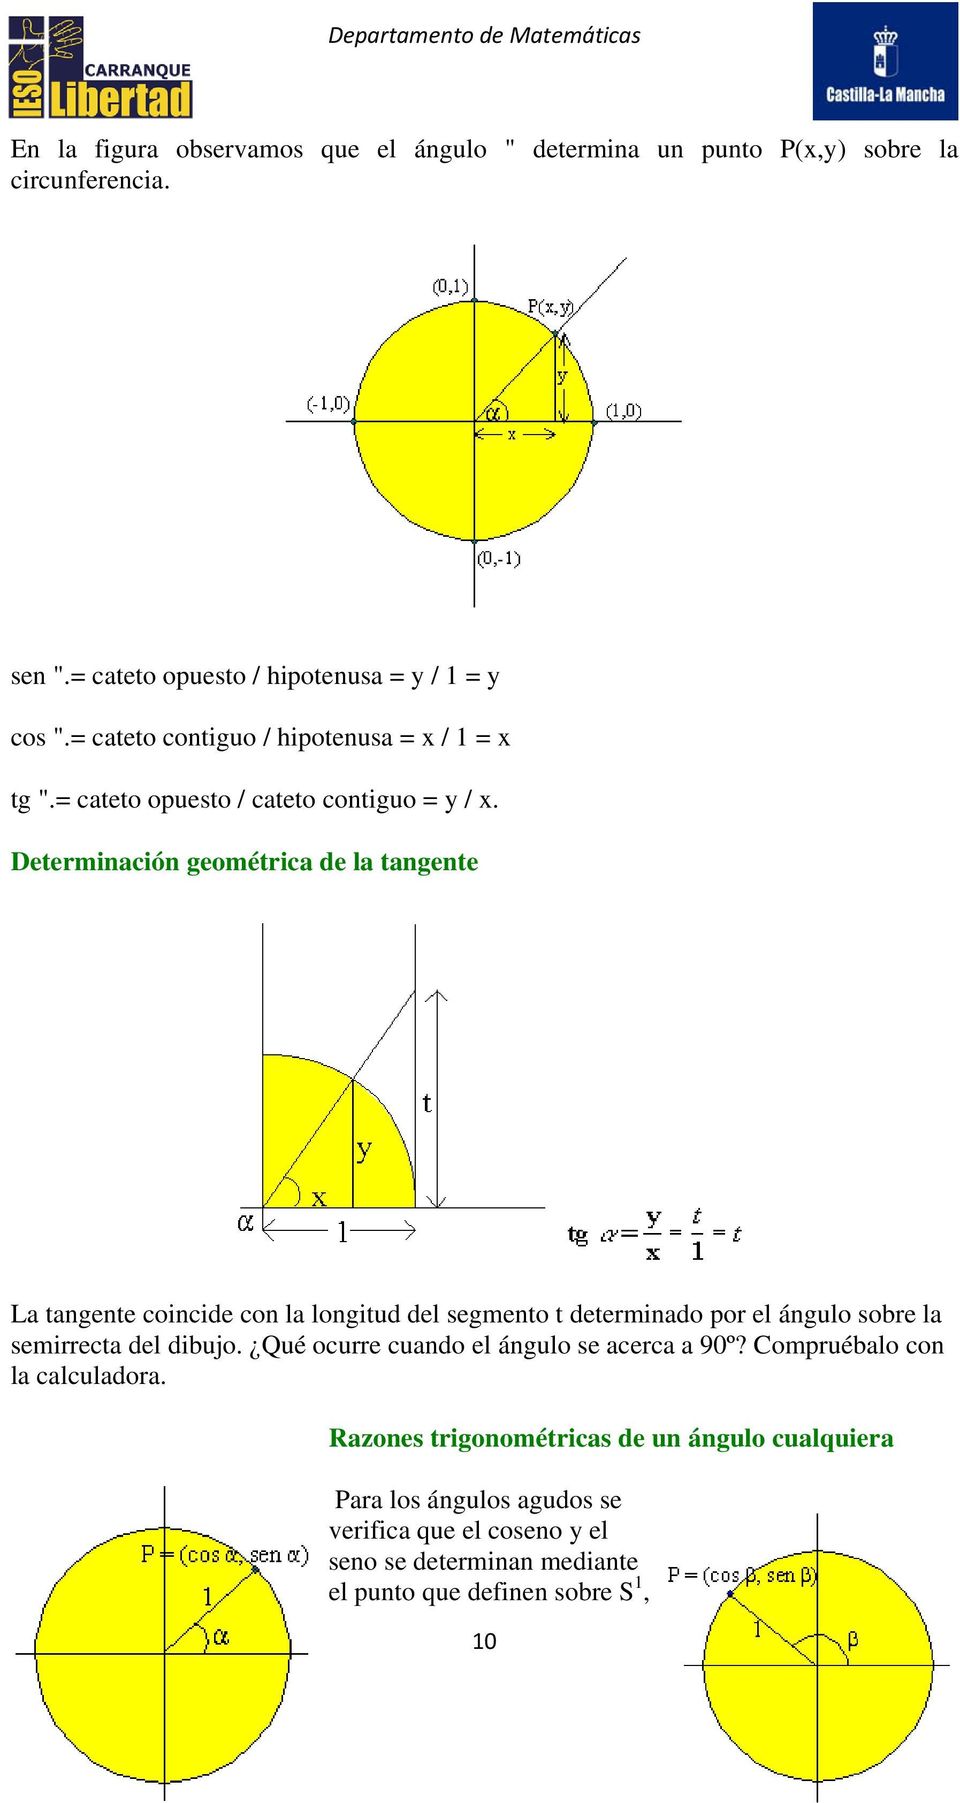 Determinación geométrica de la tangente La tangente coincide con la longitud del segmento t determinado por el ángulo sobre la semirrecta del dibujo.